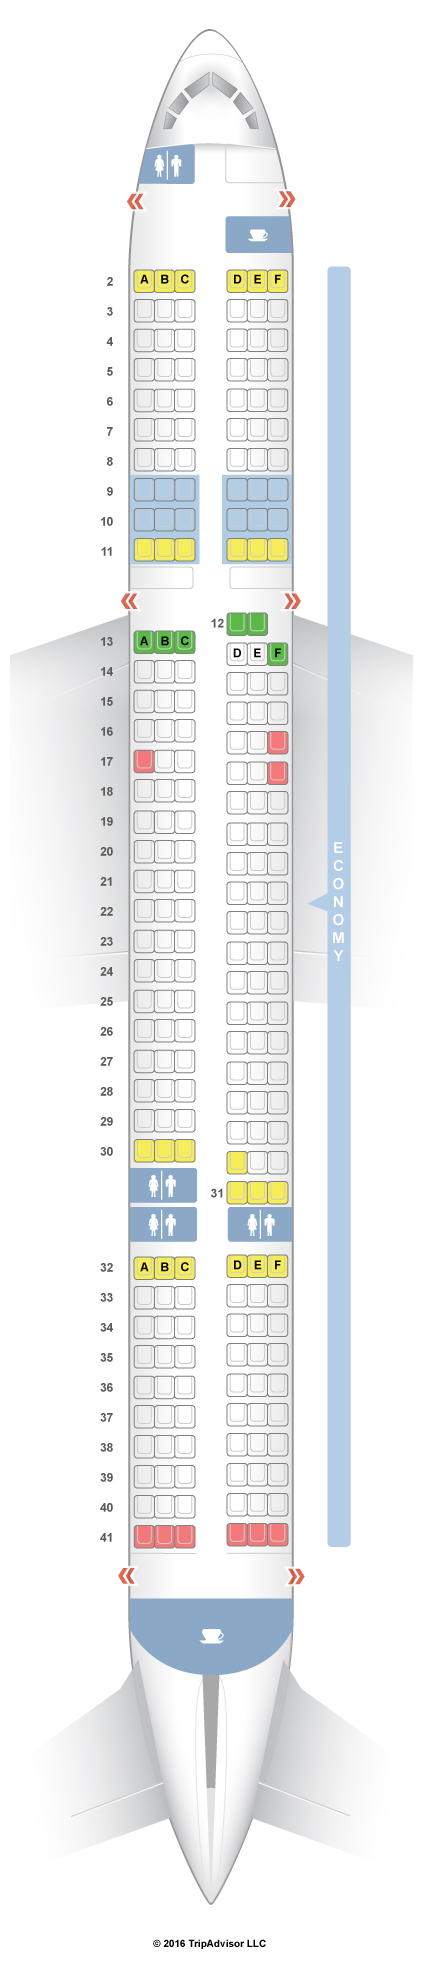 Boeing 767 Tui Seating Plan